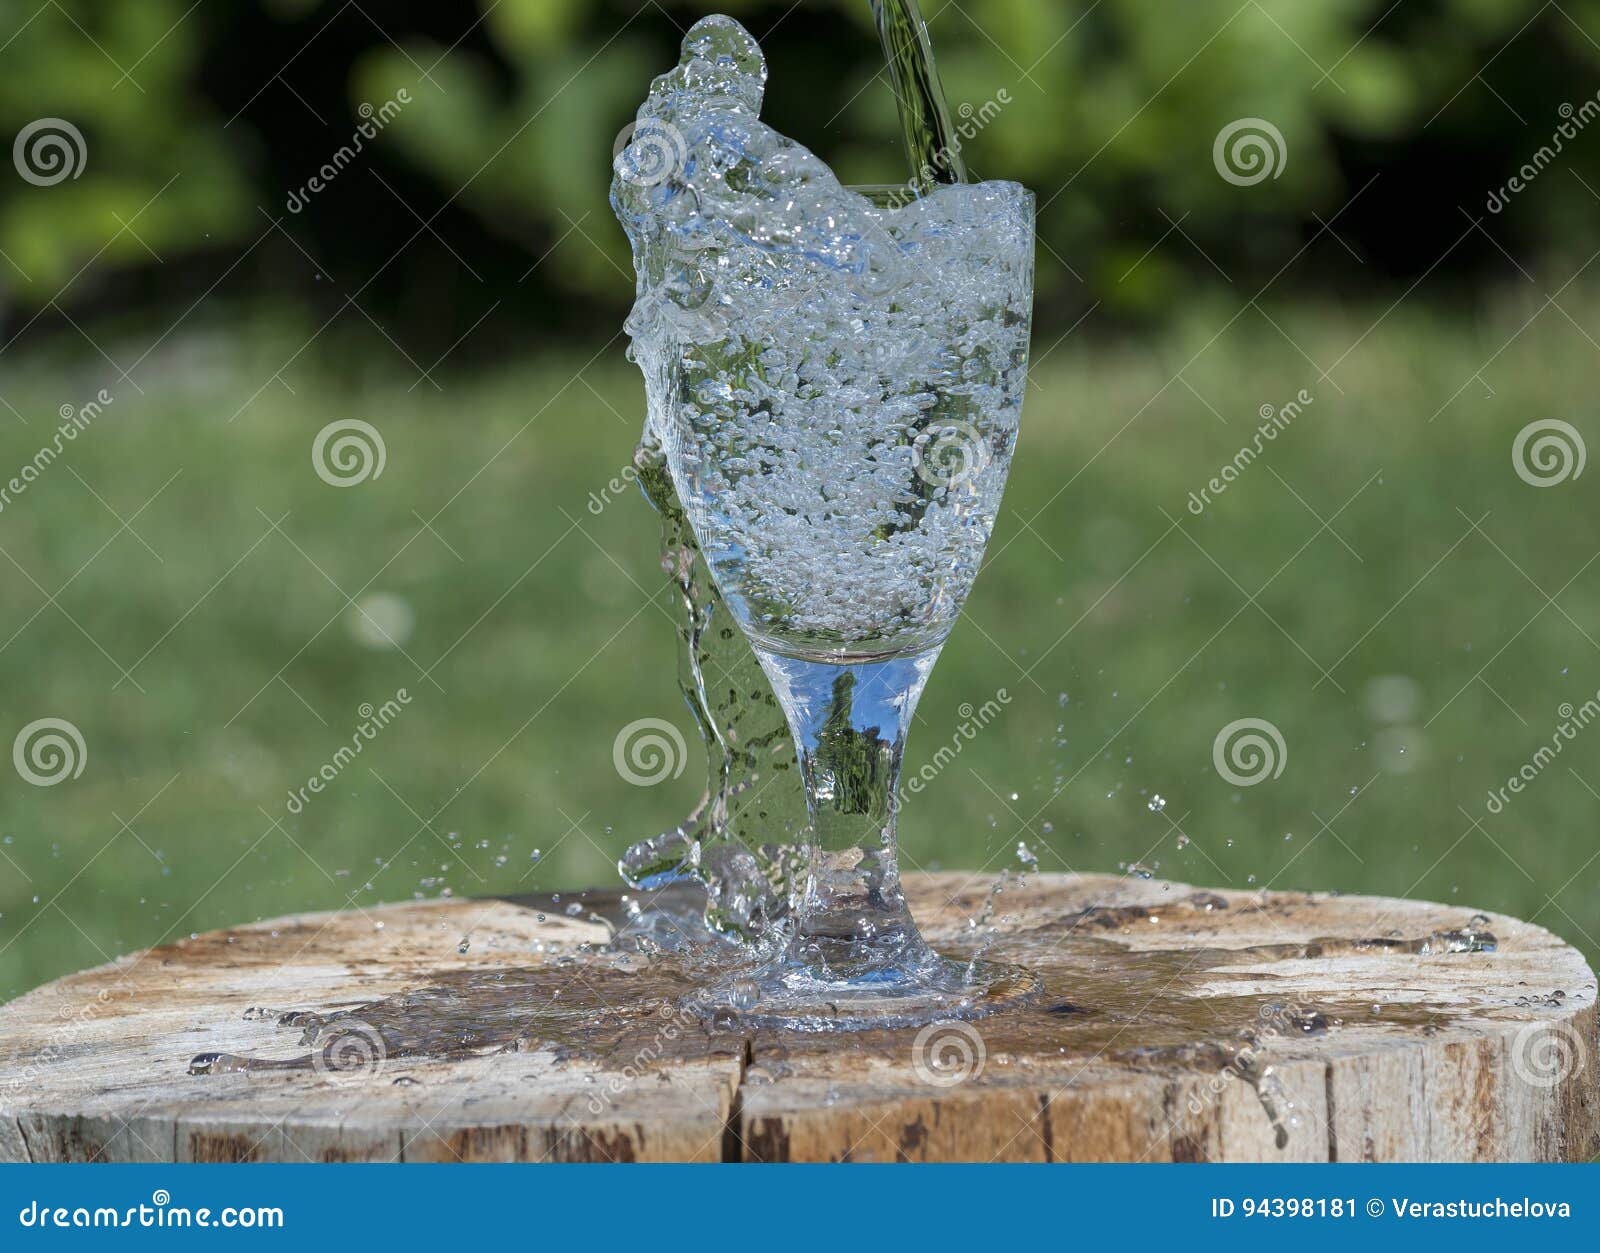 Glass mineralvatten. Exponeringsglas med mineralvatten - färgstänk